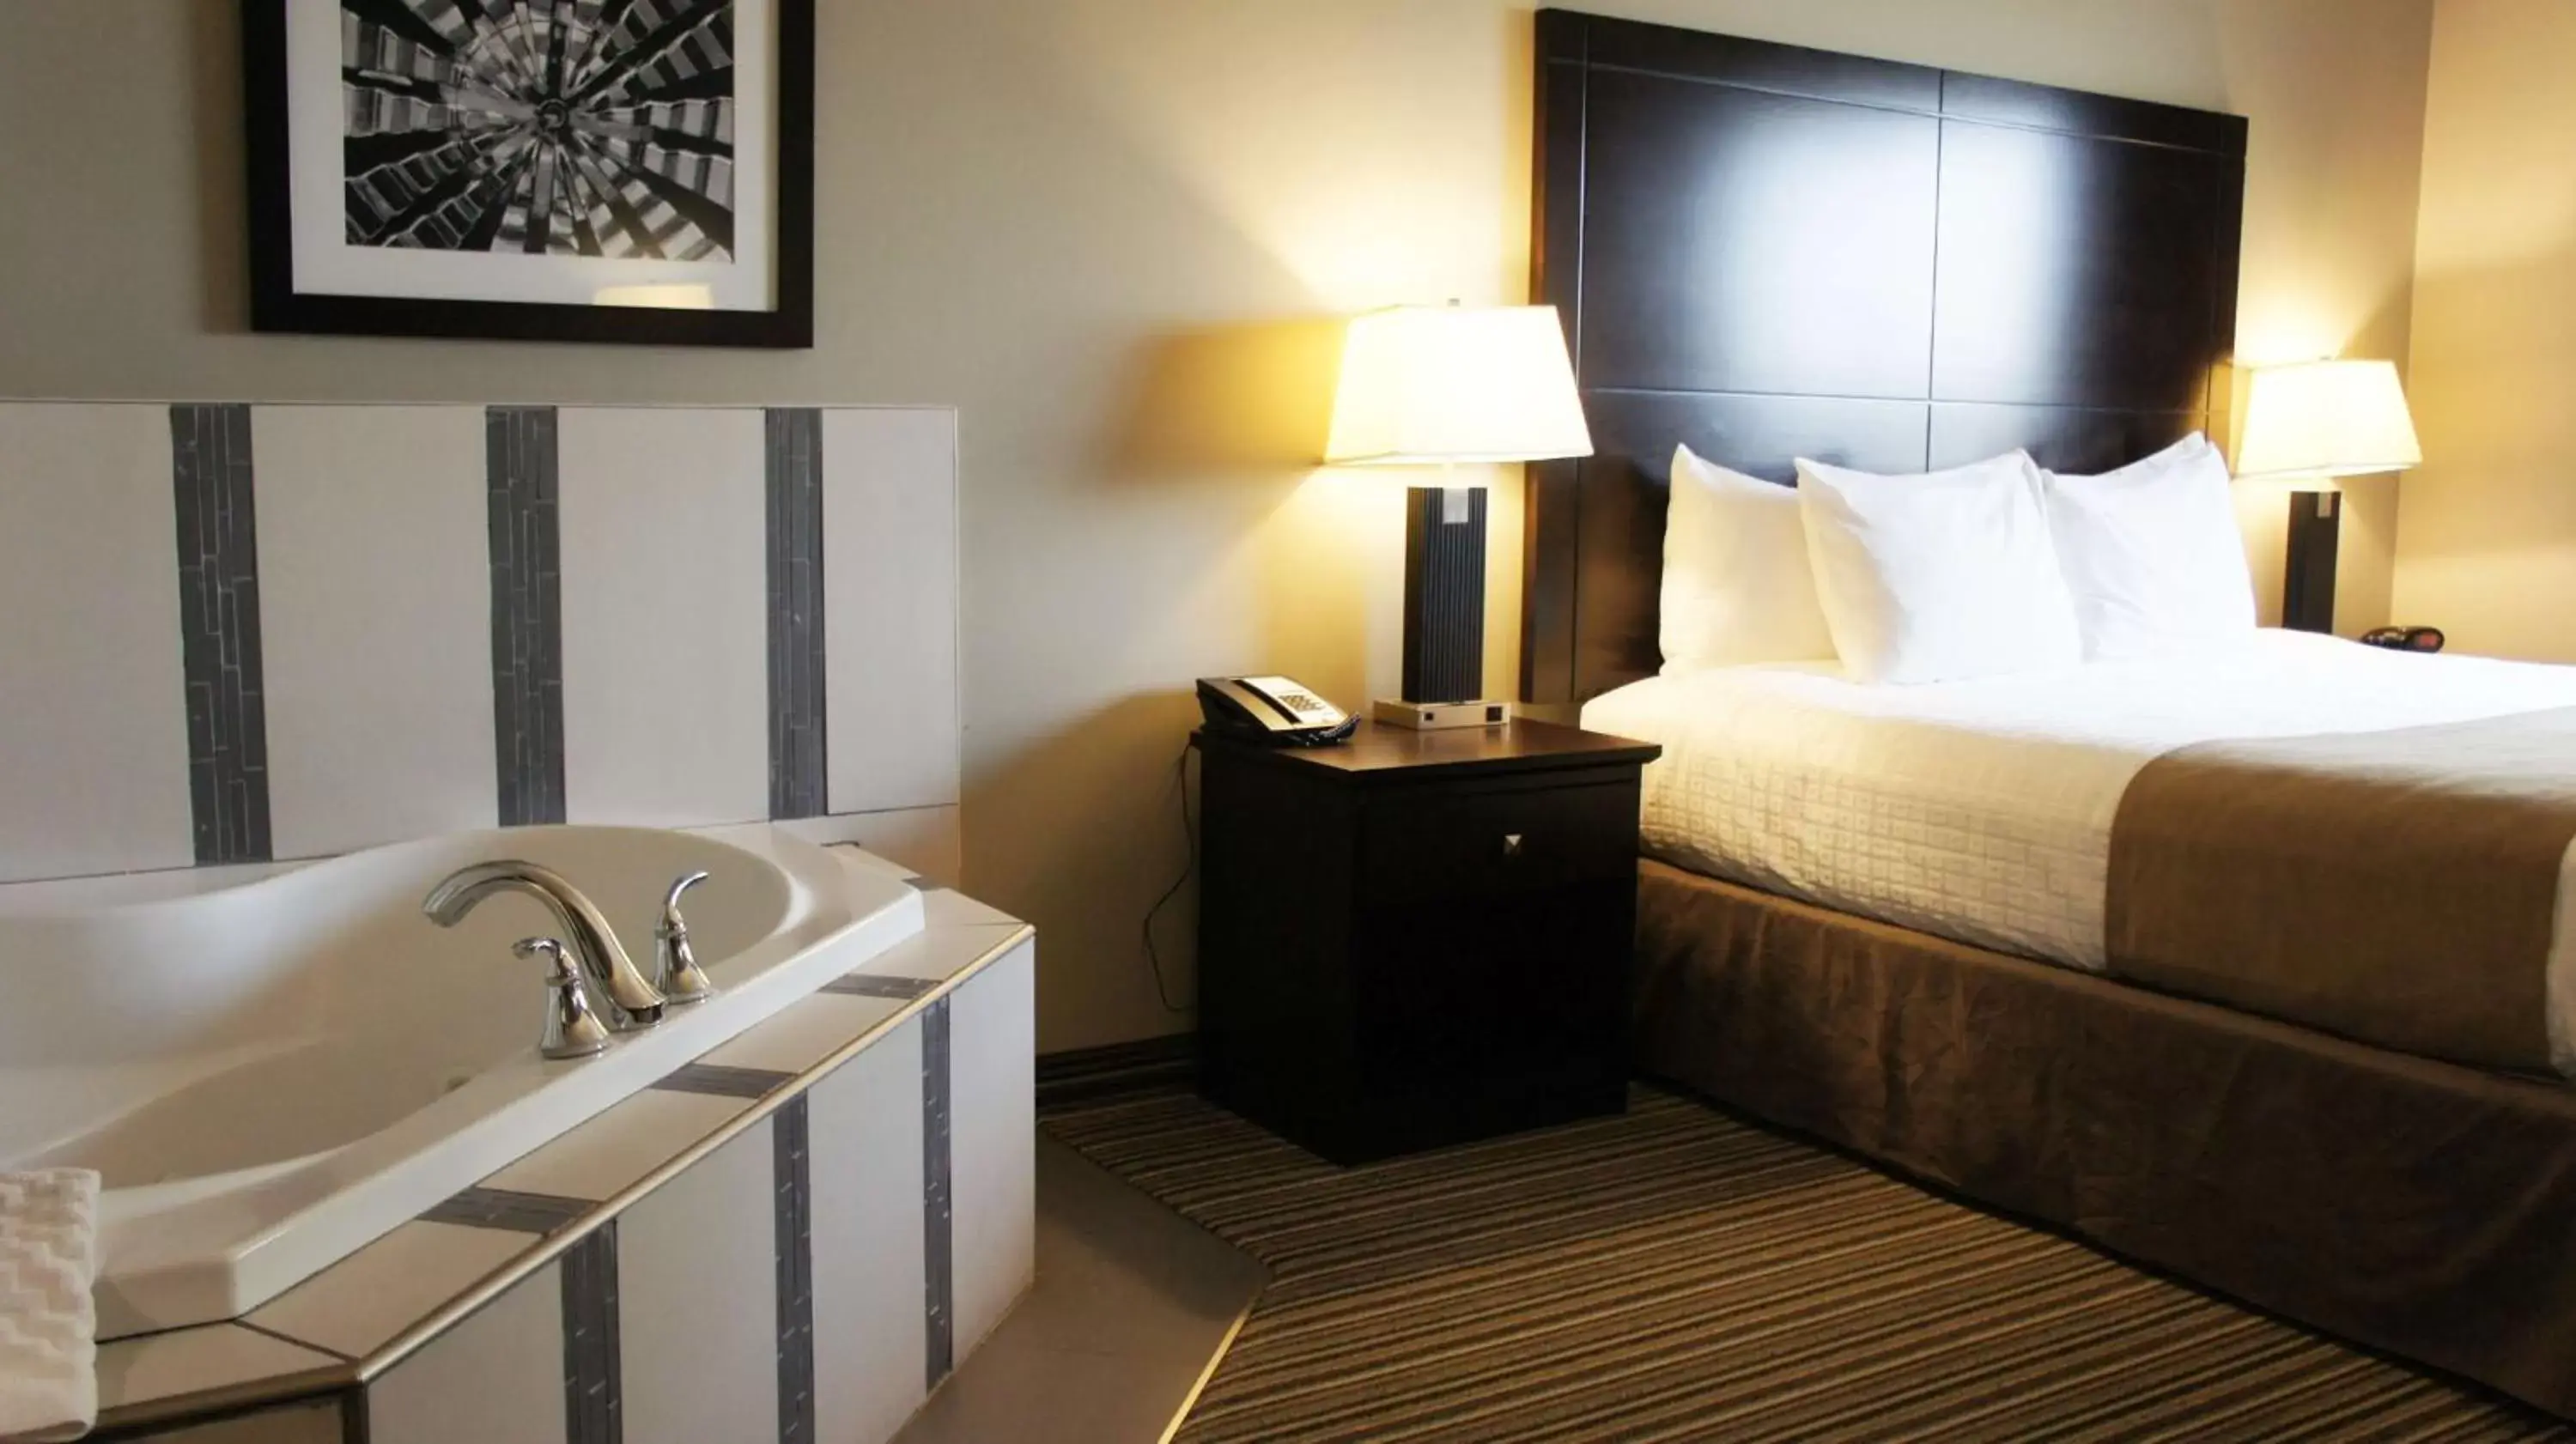 Bedroom, Bathroom in Best Western PLUS Fort Saskatchewan Inn & Suites